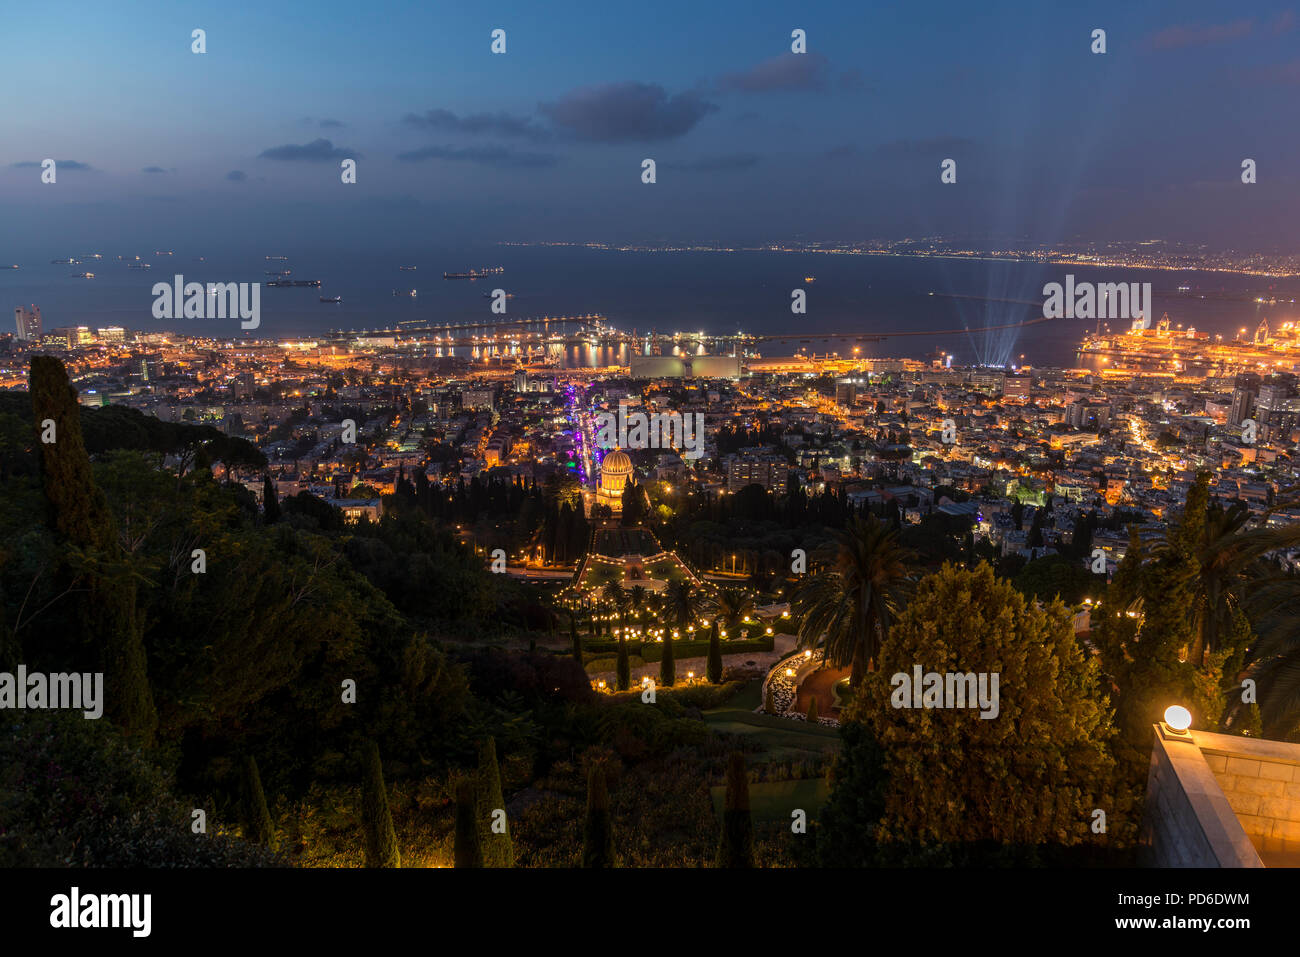 Bahai shrine in Haifa city at night Stock Photo